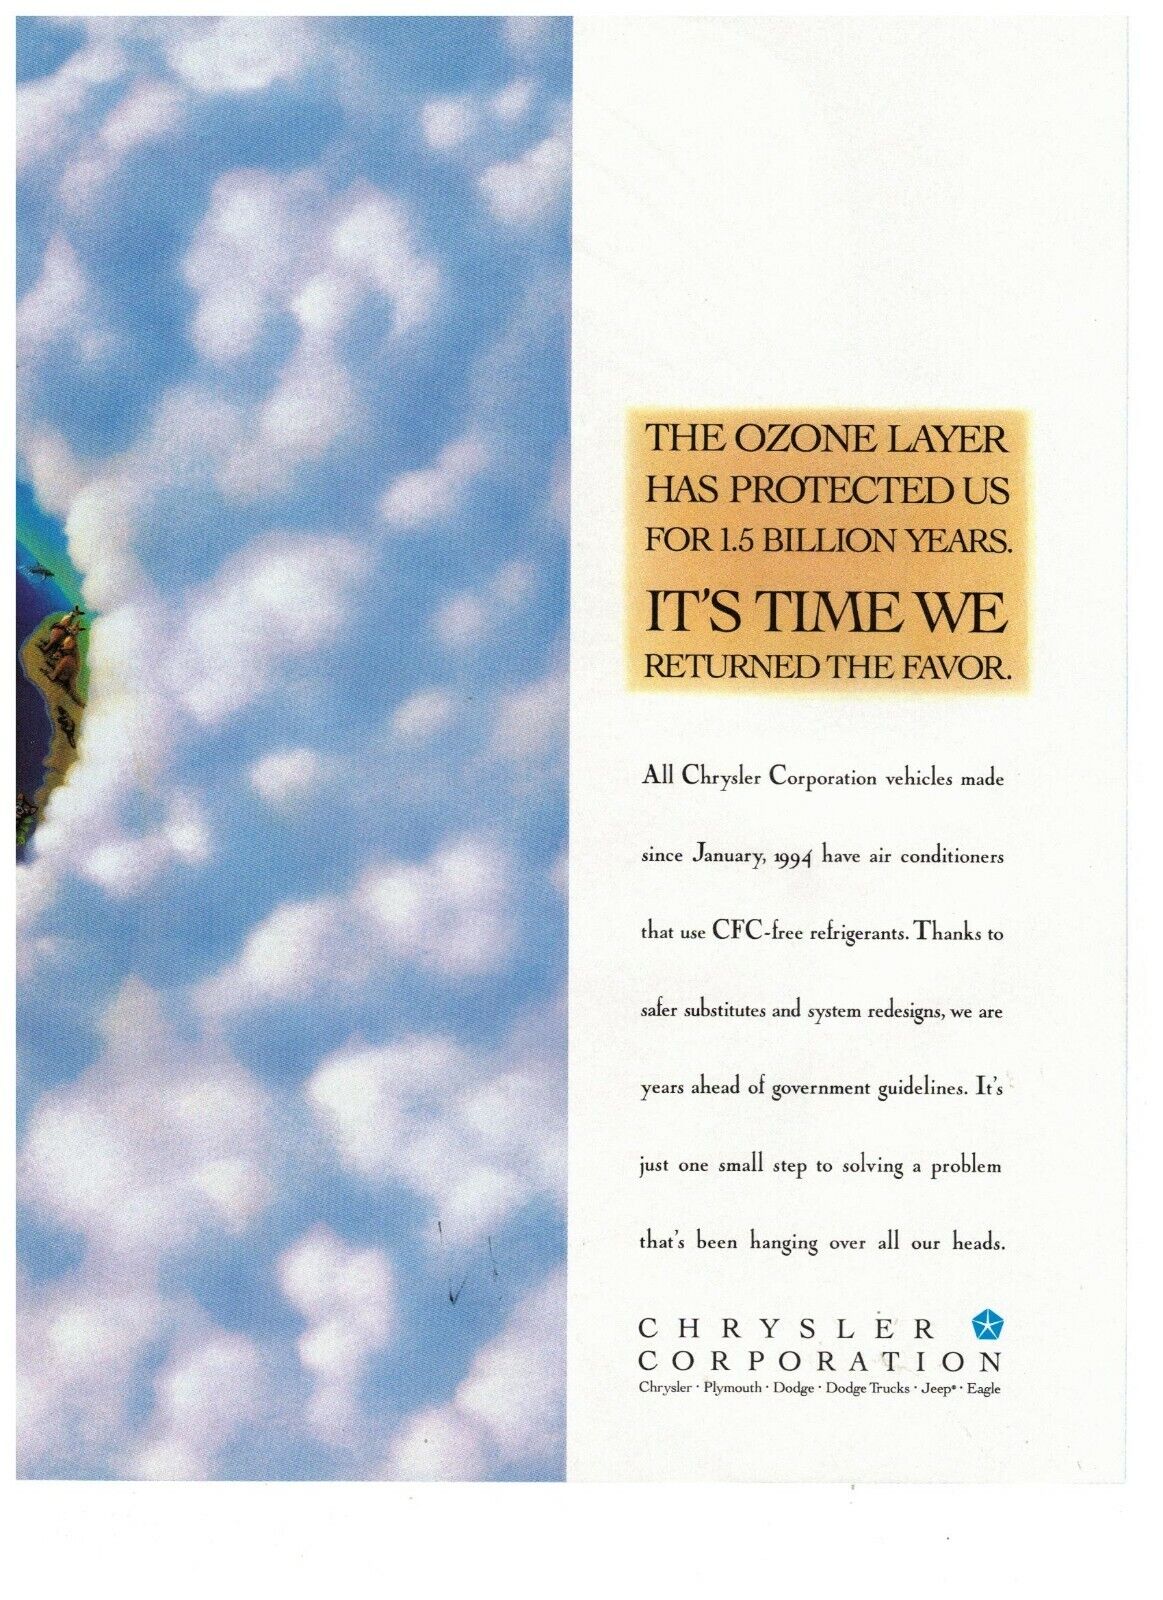 Chrysler Corporation Ozone Layer Time We Returned Favor Vintage 1995 Print Ad